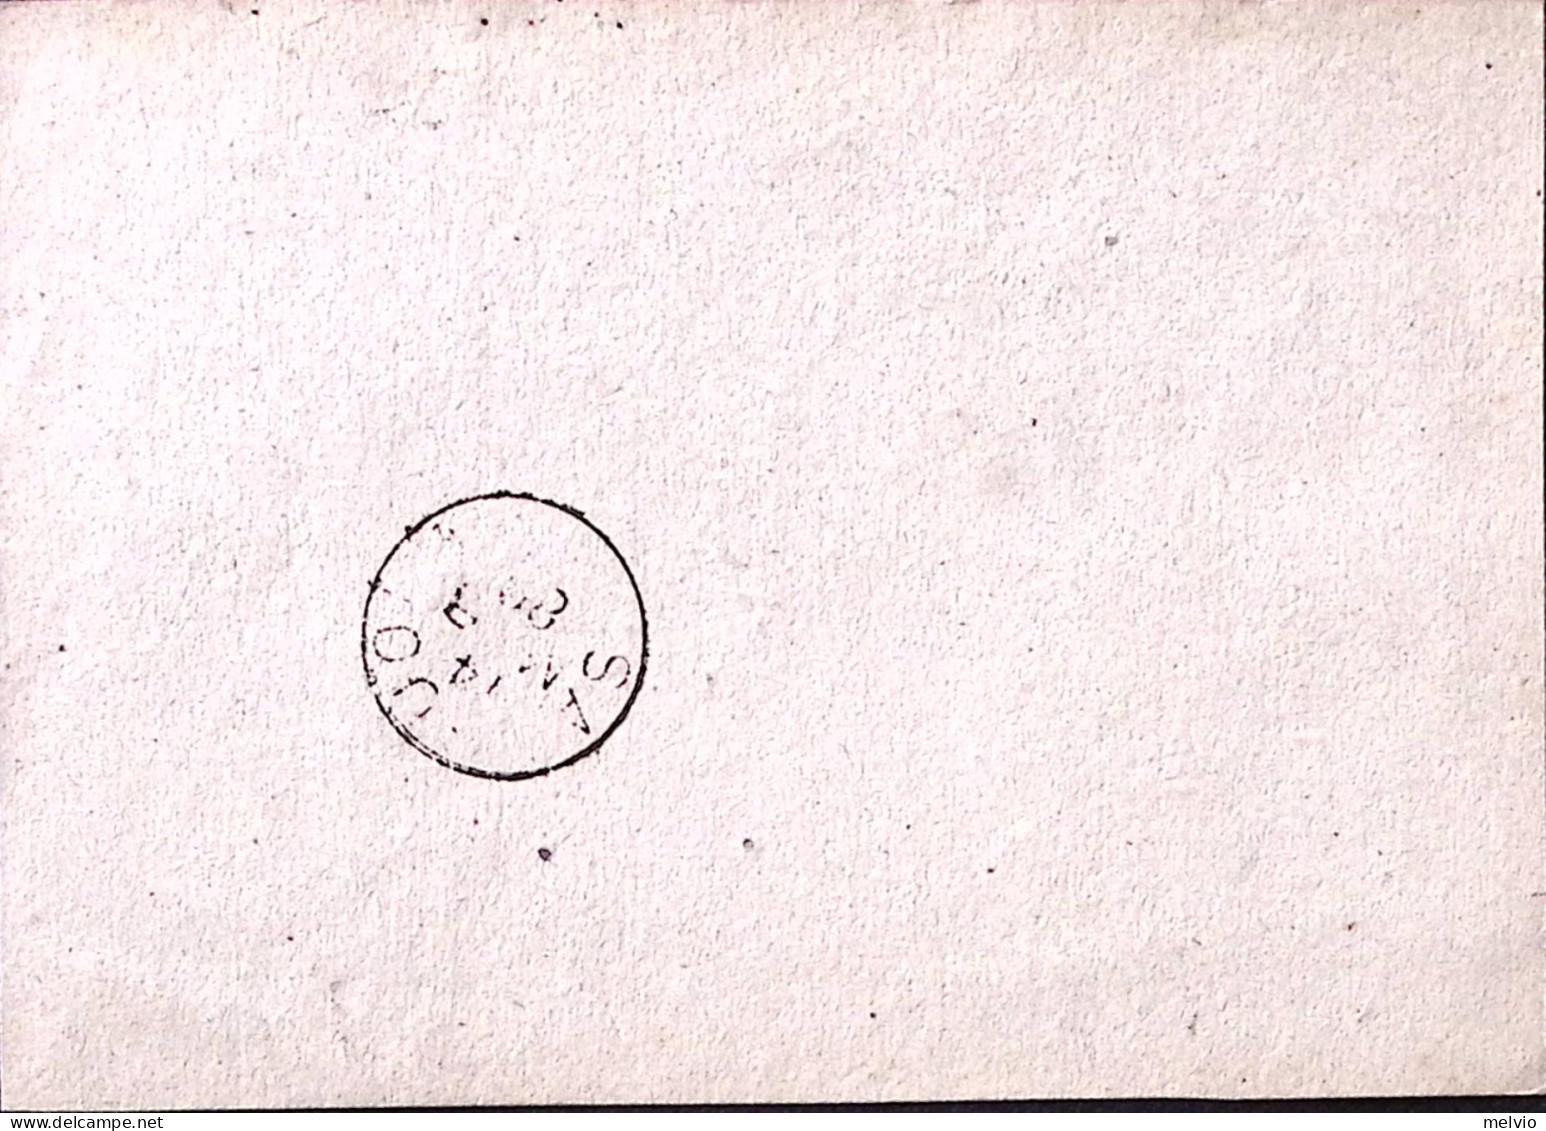 1880-SERVIZI Sopr. C. 2/10,00 (36) Isolato Su Avviso Di Passaggio Milano (13.3) - Poststempel